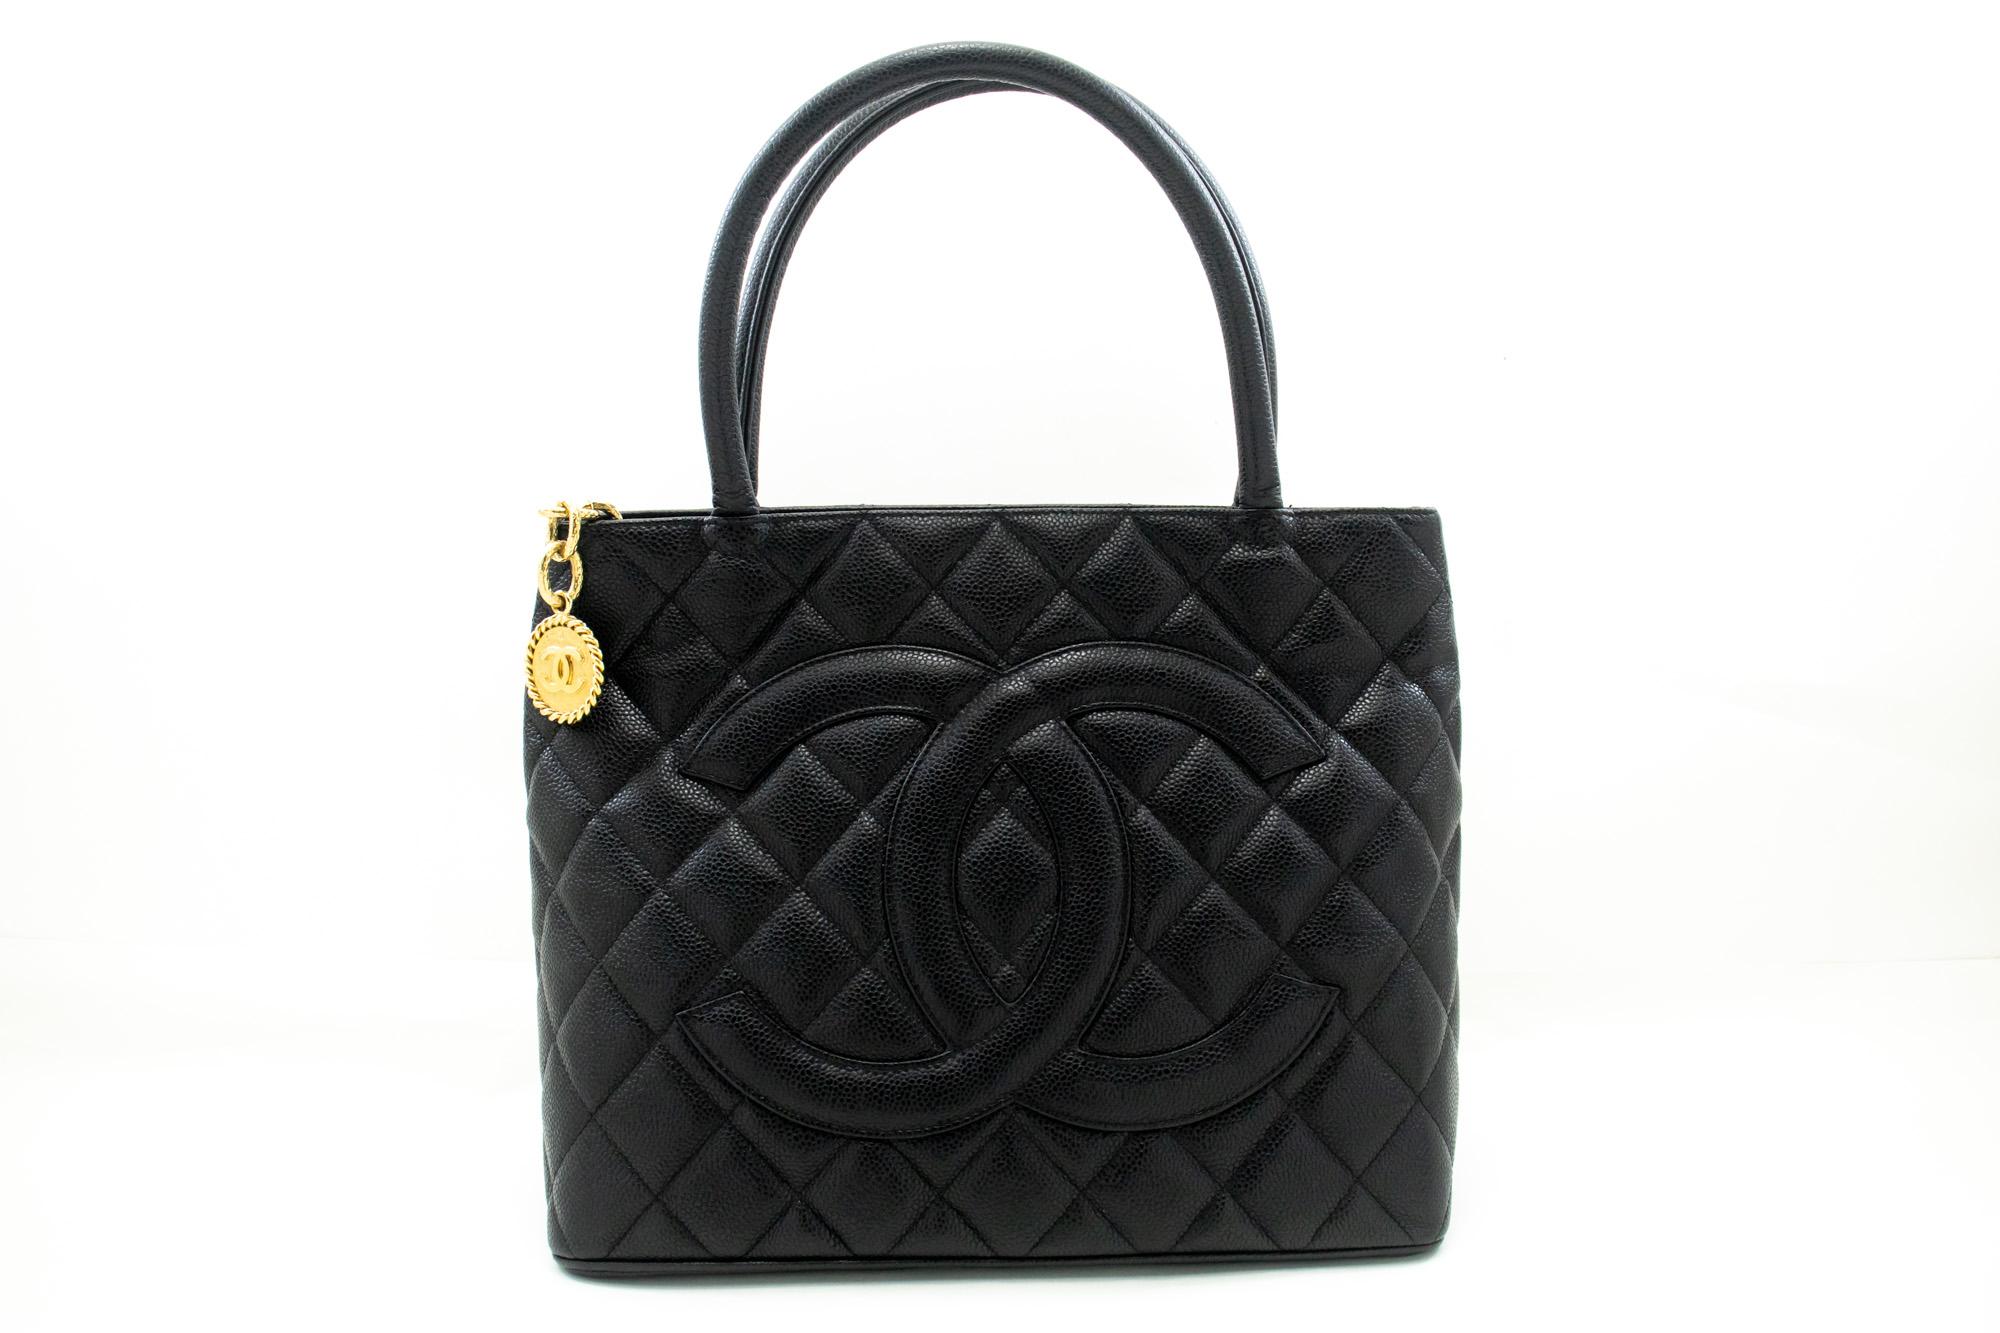 Un authentique Chanel Gold Medallion Caviar Shoulder Bag Grand Shopping Tote. La couleur est noire. Le matériau extérieur est le cuir. Le motif est solide. Cet article est un article contemporain. L'année de fabrication serait 2008.
Conditions et